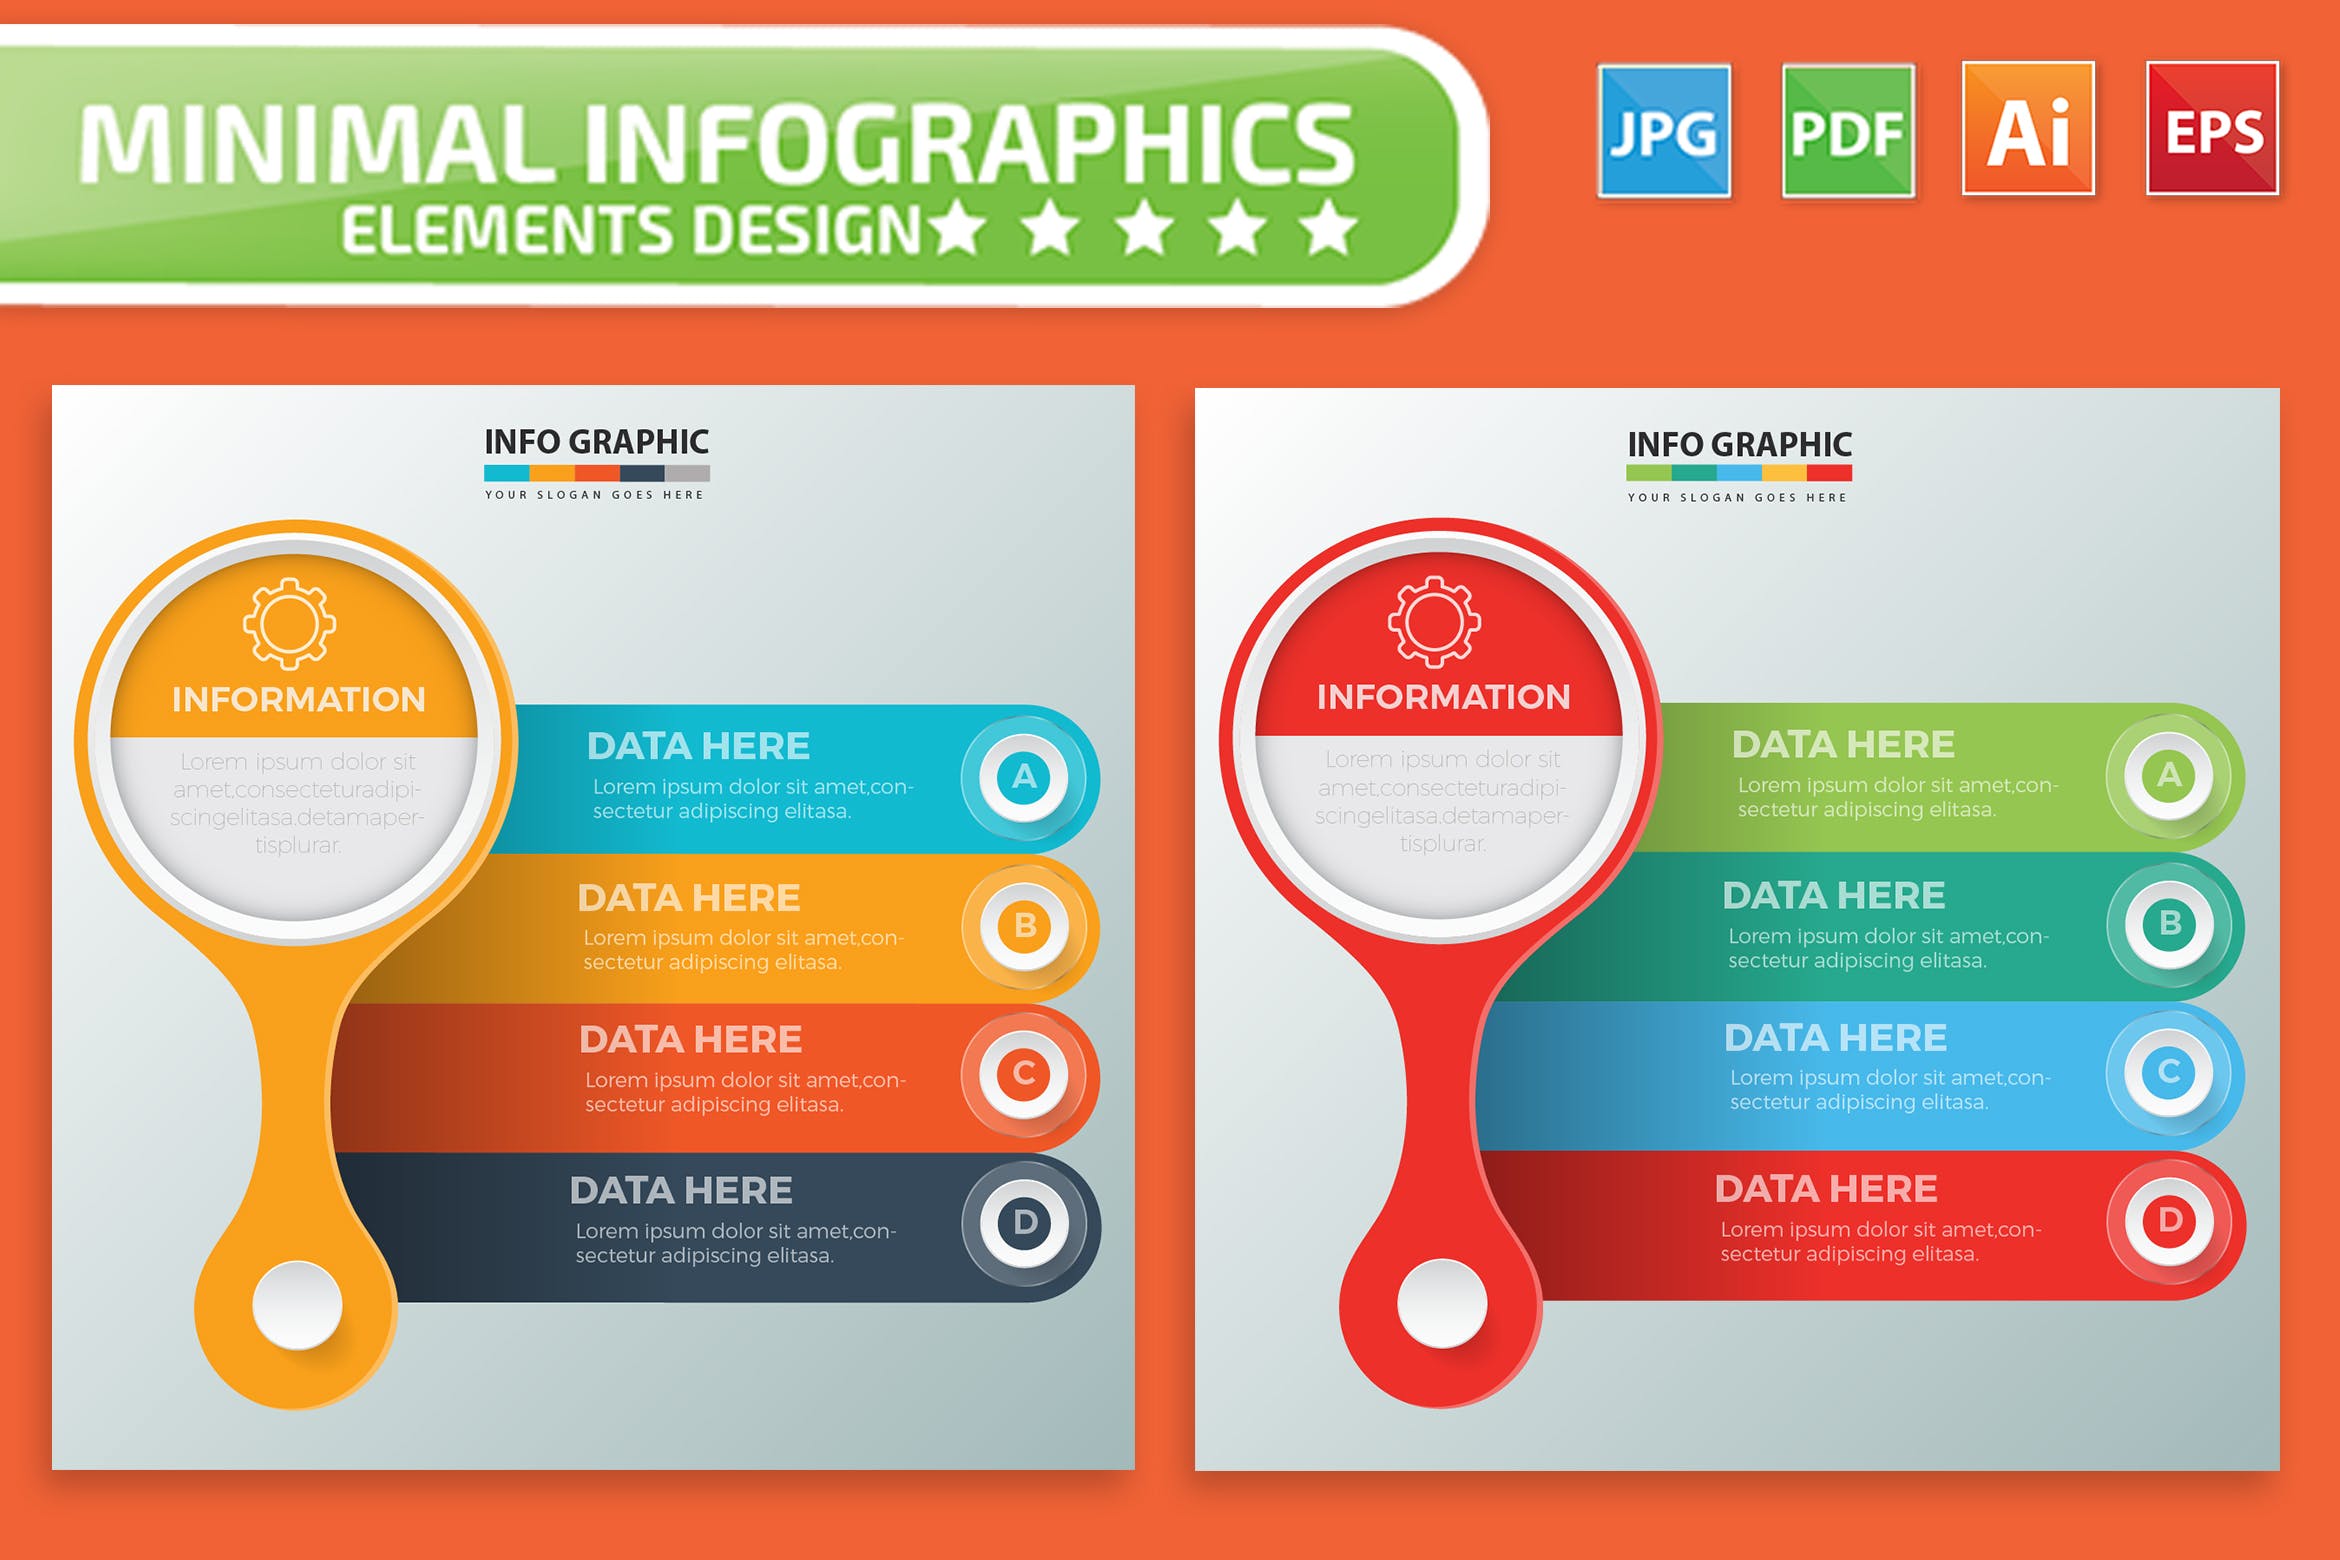 要点说明/重要特征信息图表矢量图形素材库精选素材v1 Infographic Elements Design插图